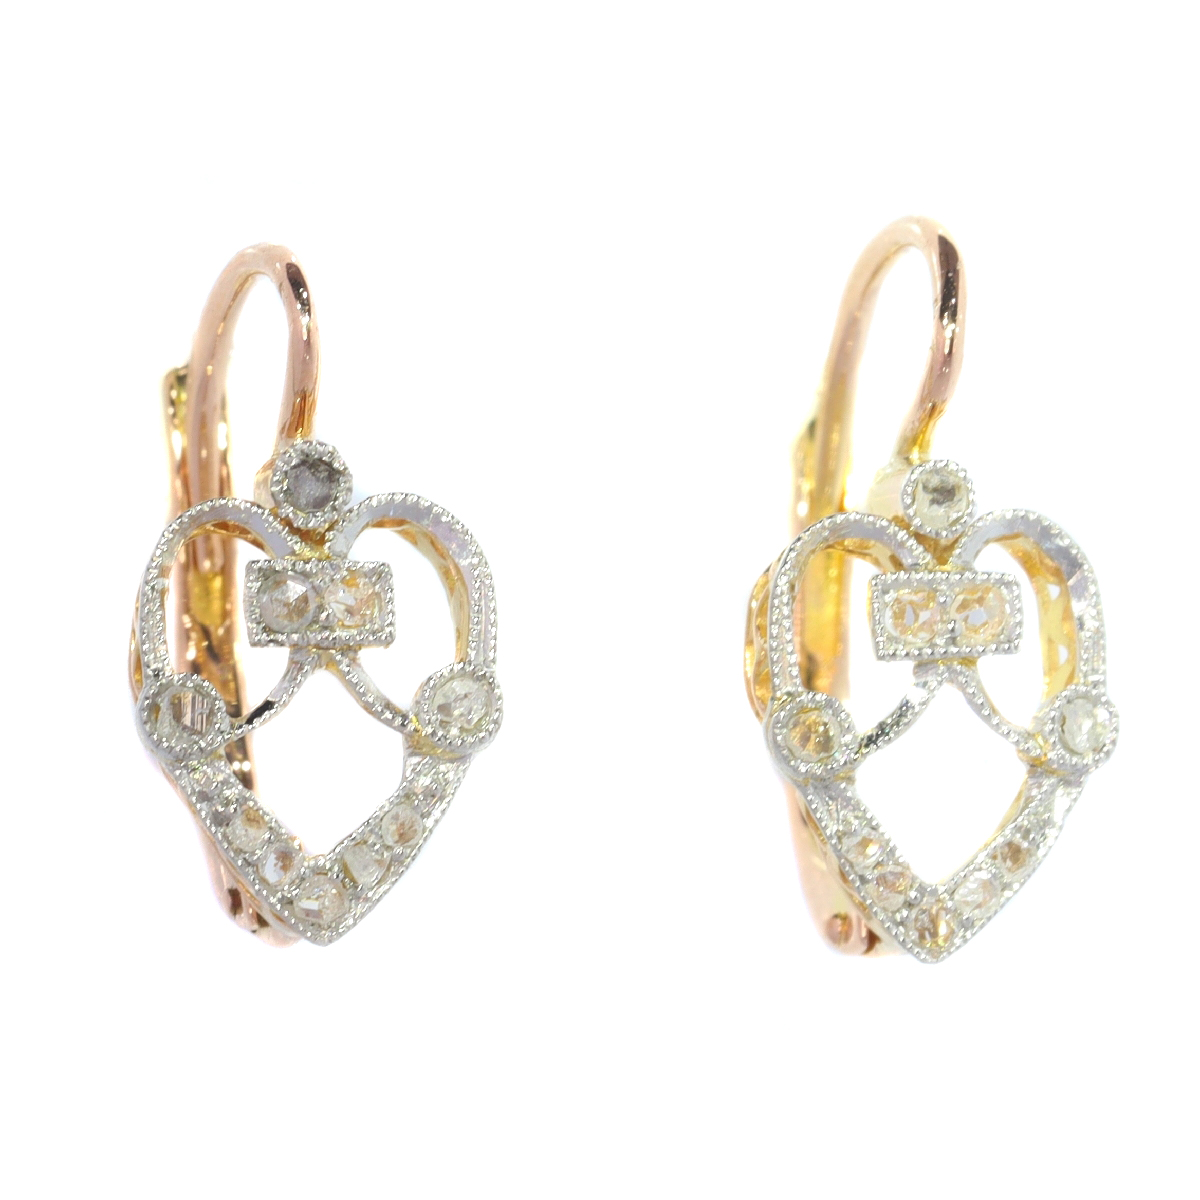 Charming Belle Epoque diamond earrings